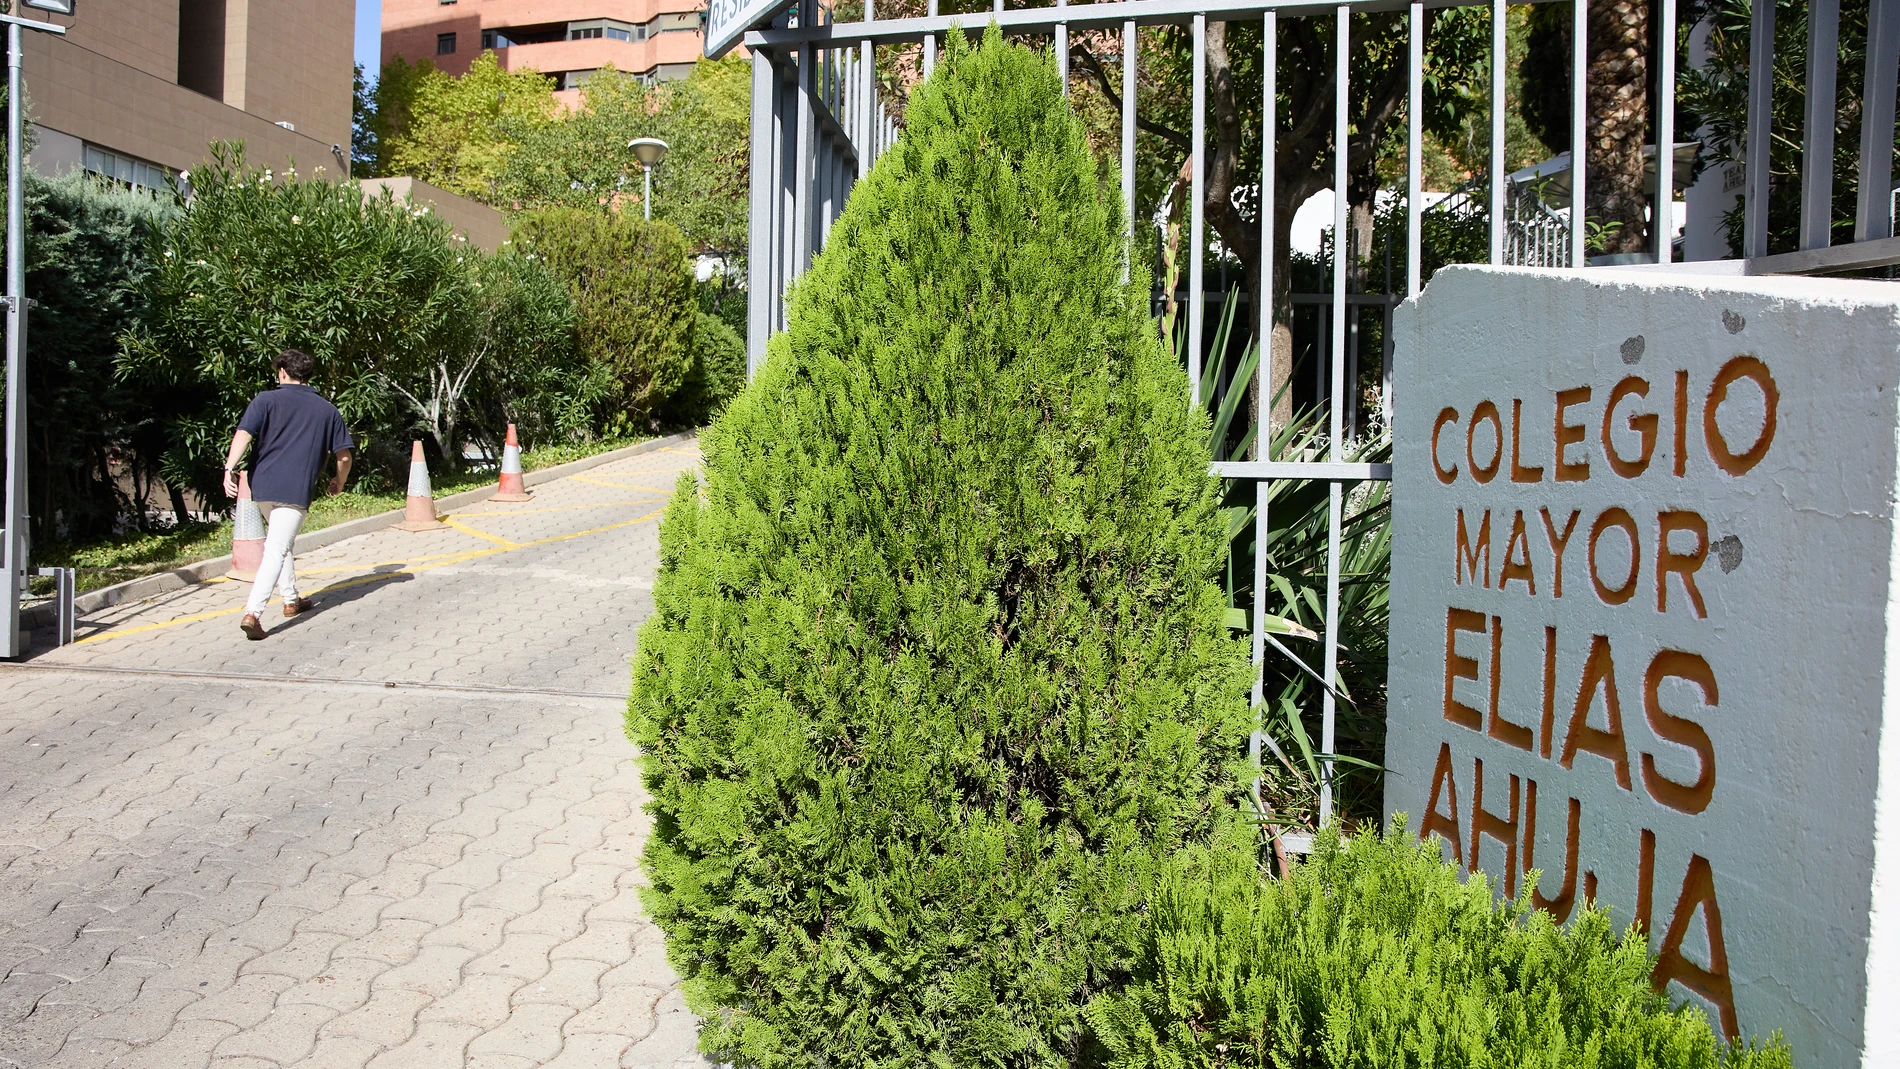 Entrada del Colegio Mayor Elías Ahúja.